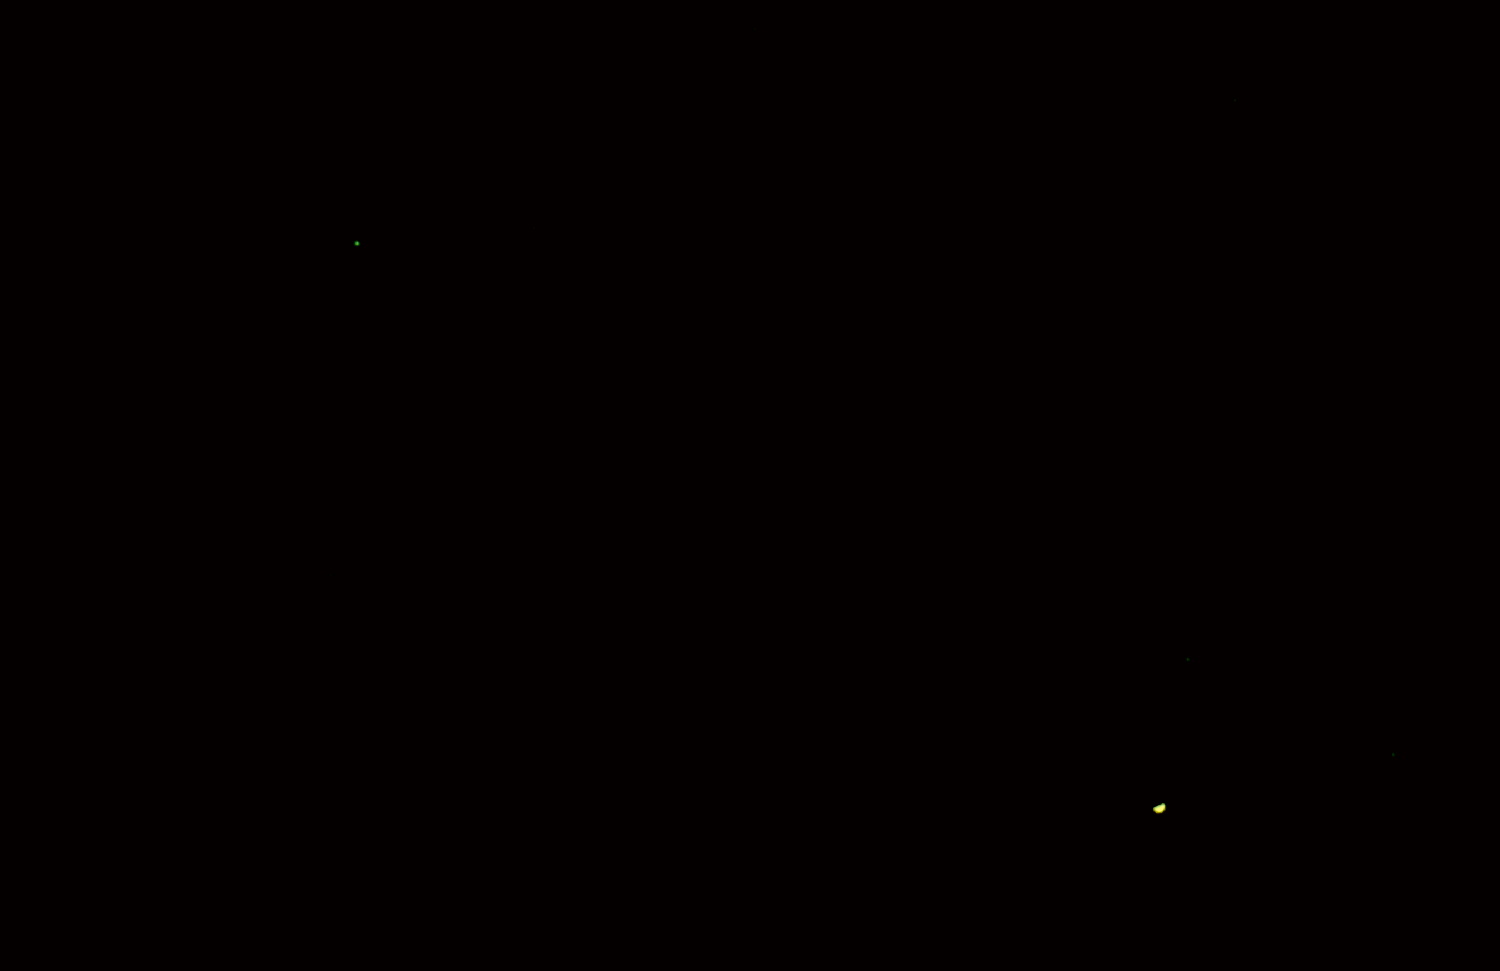 東方最大離の金星と海王星の接近　2017.01.12　金星18:38:57 海王星18:40:02 ｺﾝﾎﾟｼﾞｯﾄ2000mm